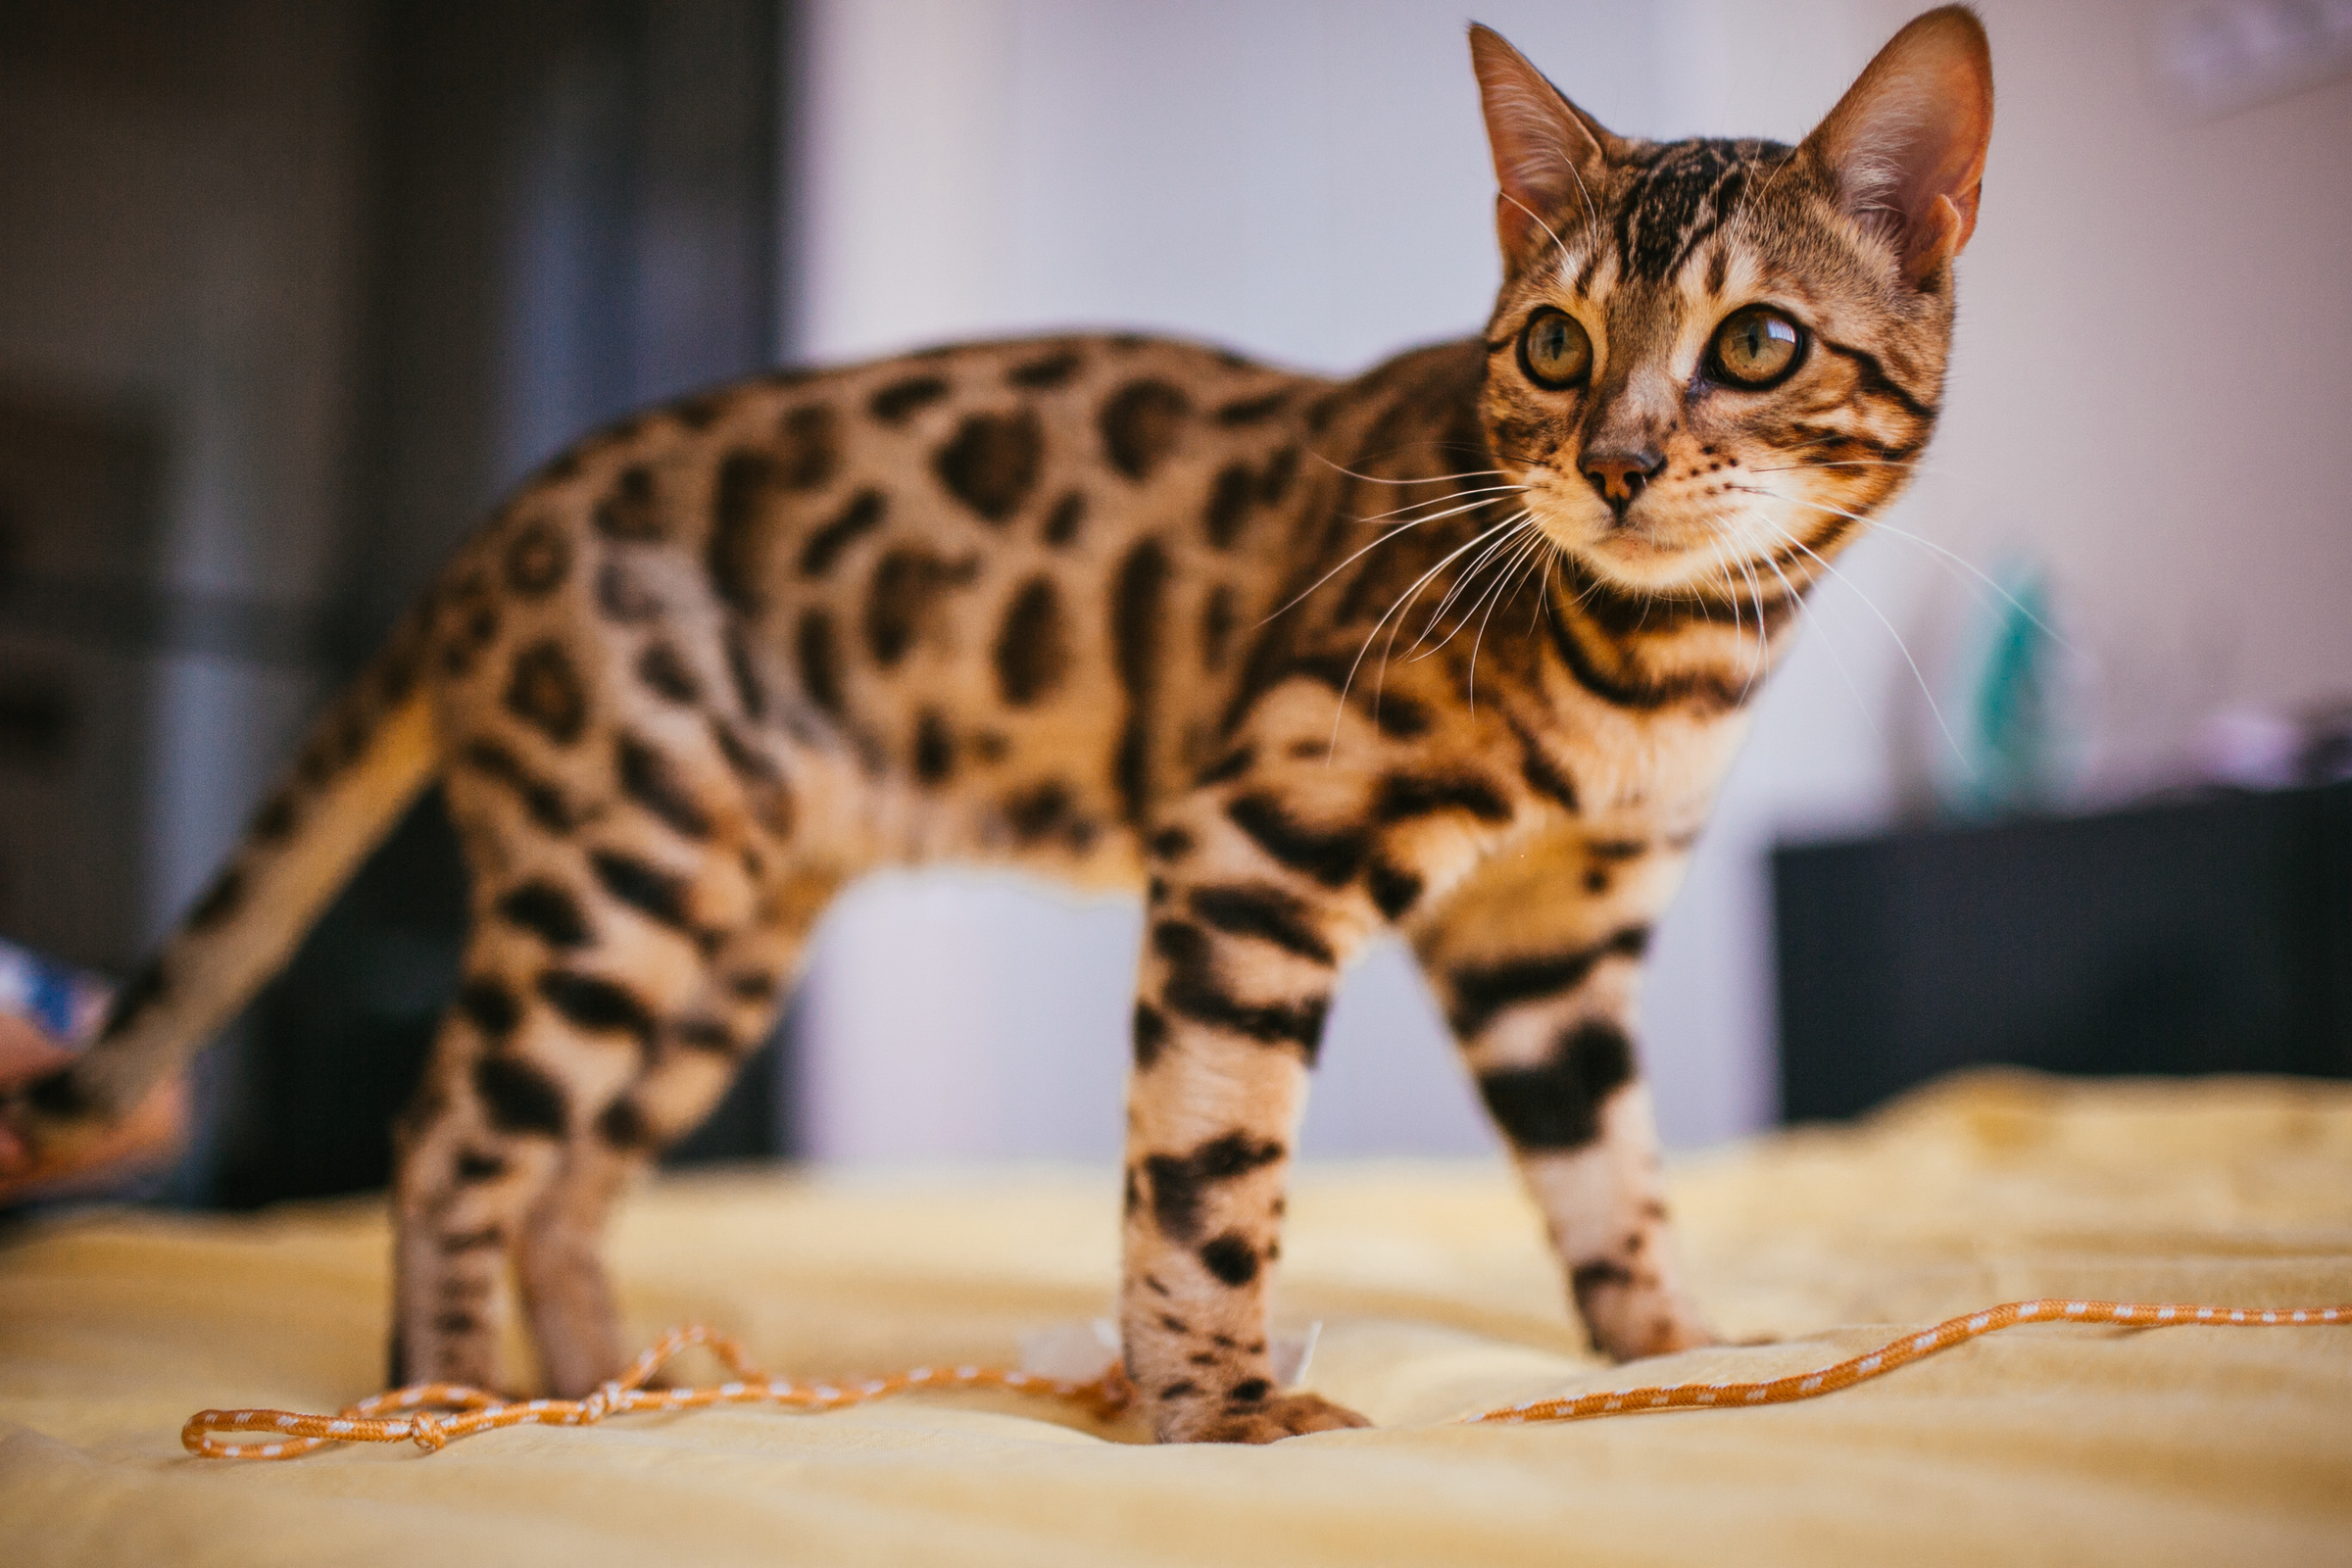 Бенгальская порода кошек — "домашний леопард" — считается одной из самых любопытных и неугомонных. Фото © Freepik / freepic.diller